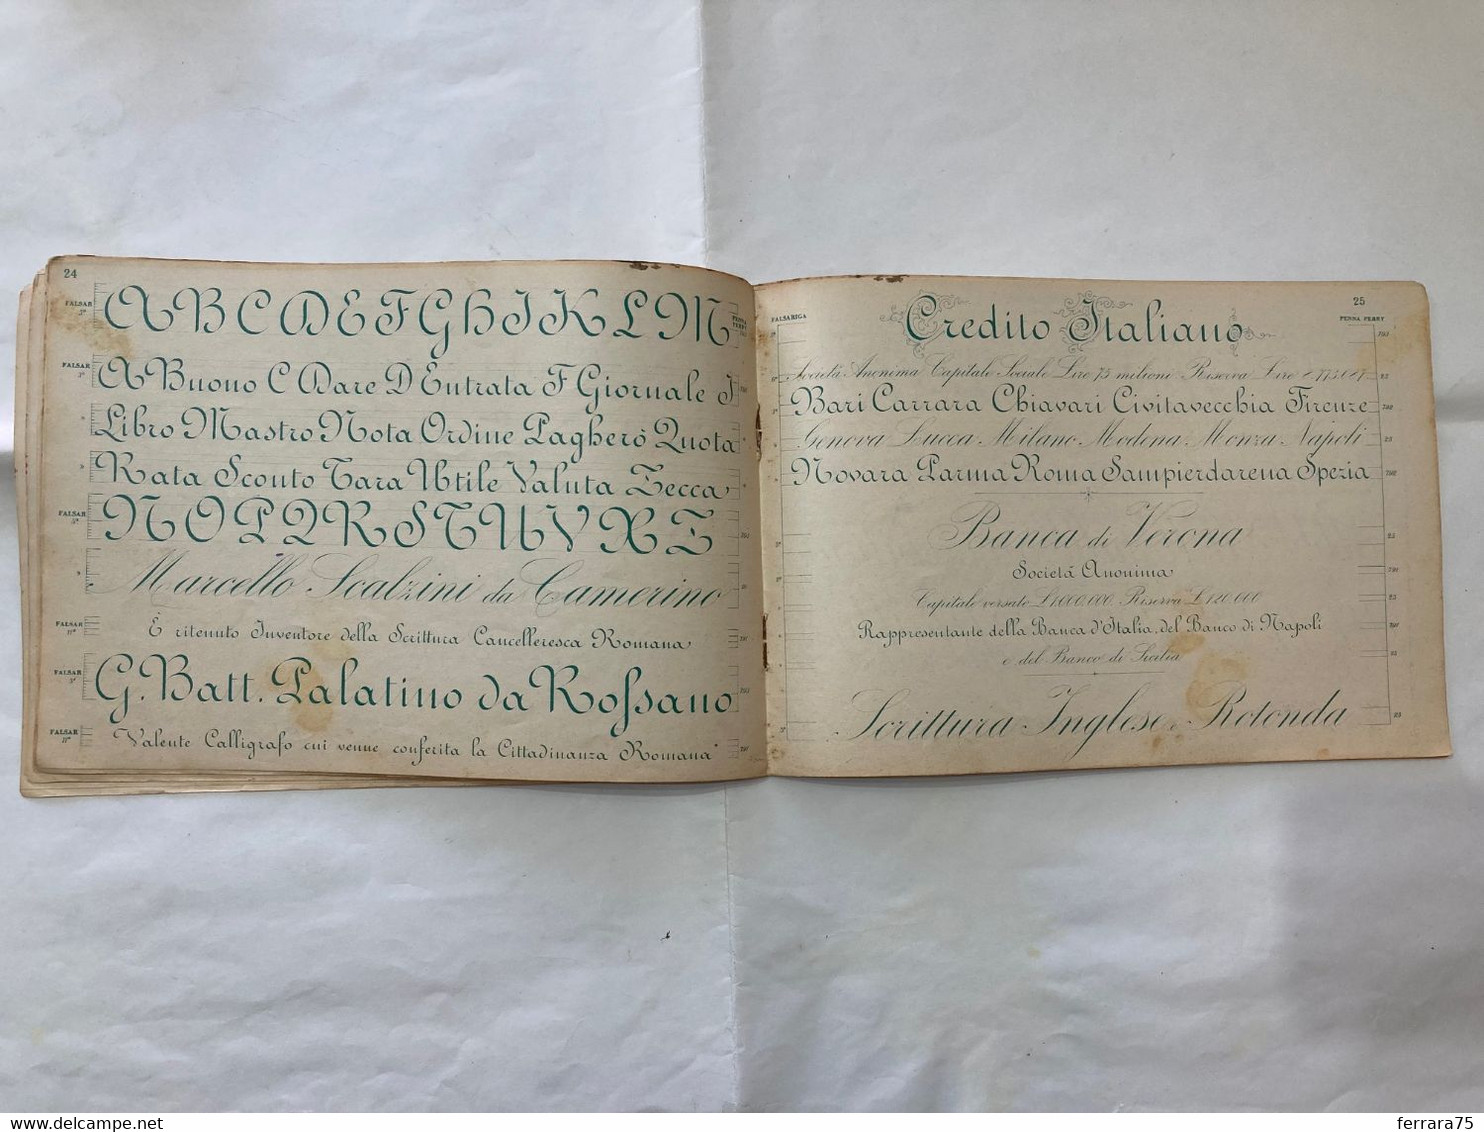 LAMANNA MODELLI DI CALLIGRAFIA SCRITTURA INGLESE 4°REGGIMENTO ALPINI 1933.